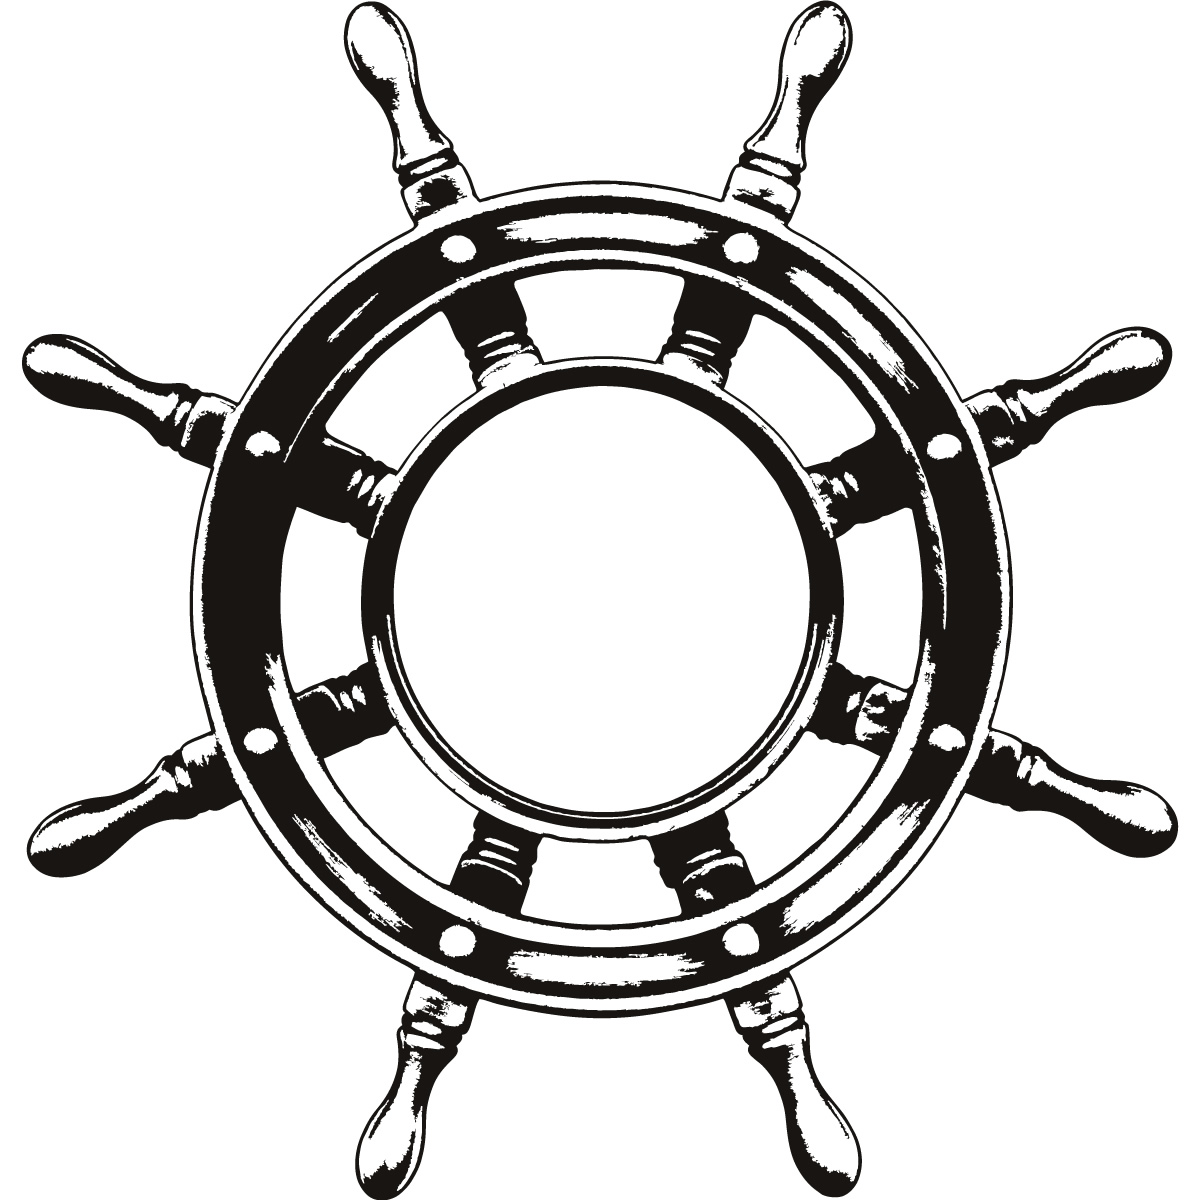 Ship Steering Wheel Helm Wall Art Sticker Wall Decal Transfers   Ebay